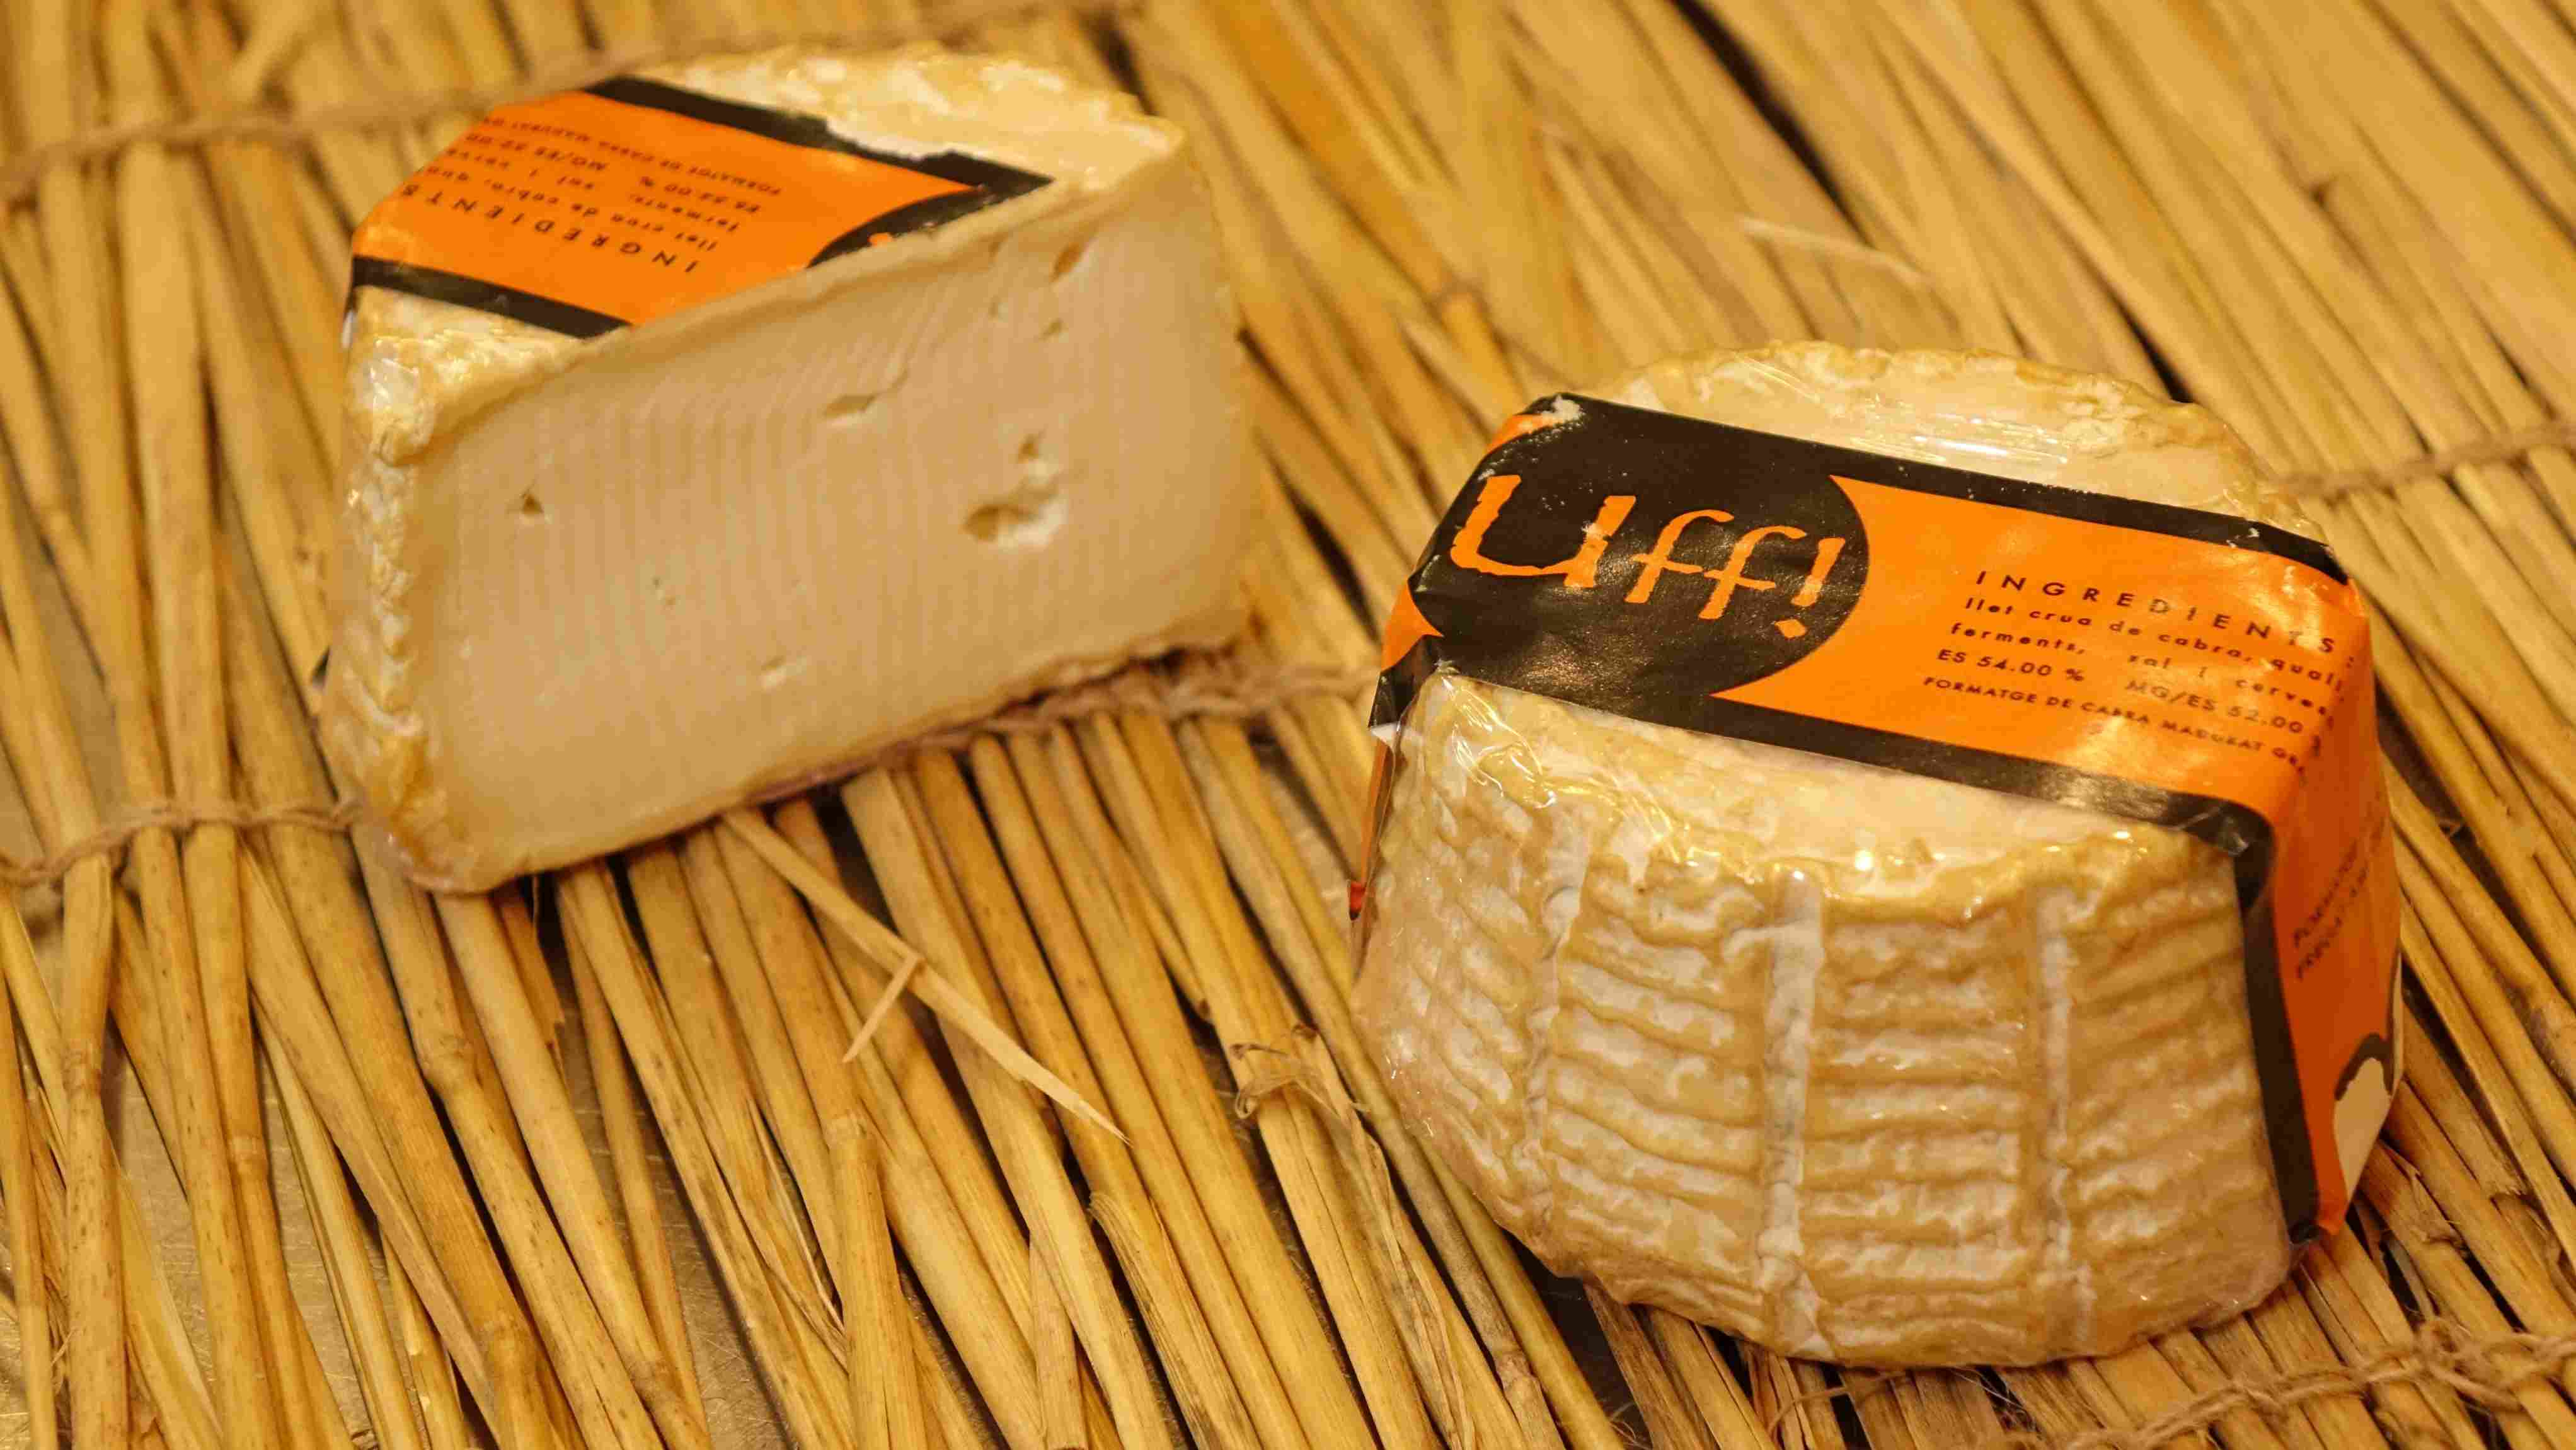 El queso más atrevido y sorprendente de Catalunya con el nombre más osado